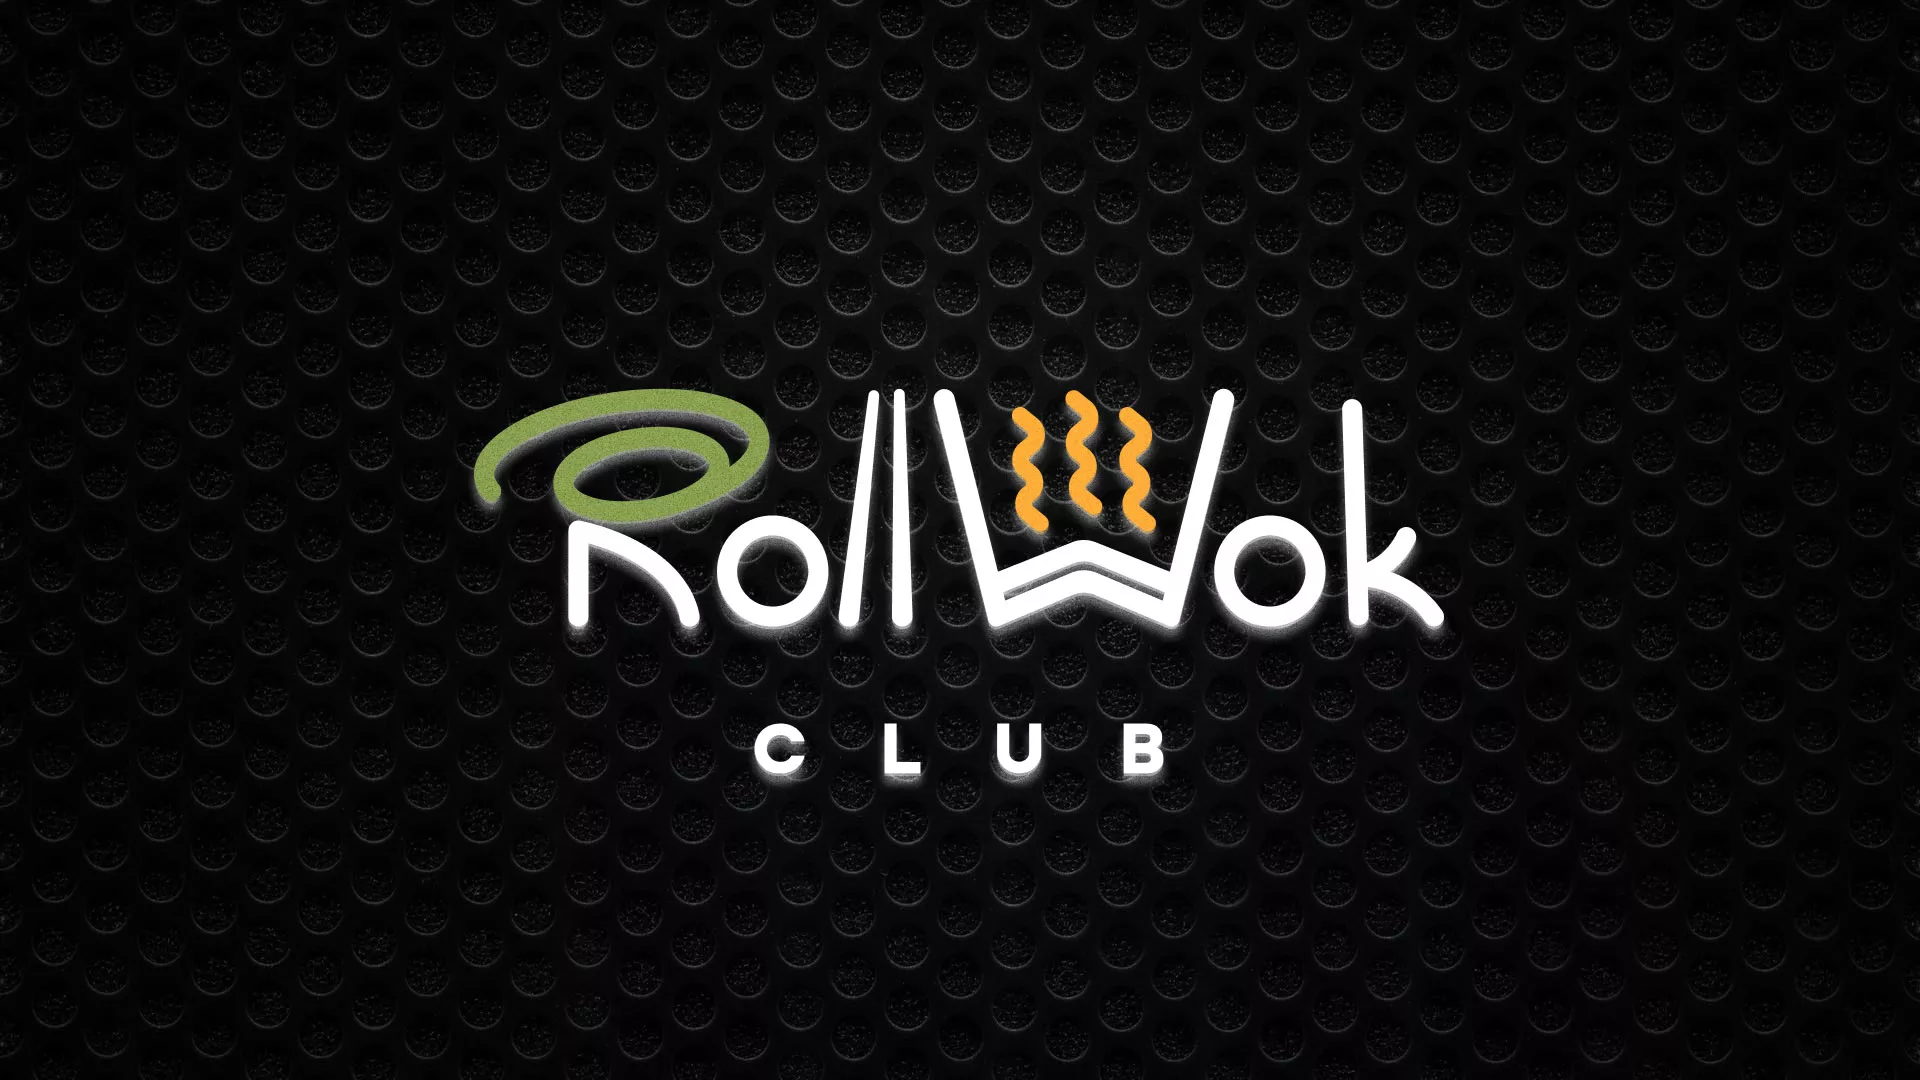 Брендирование торговых точек суши-бара «Roll Wok Club» в Благовещенске